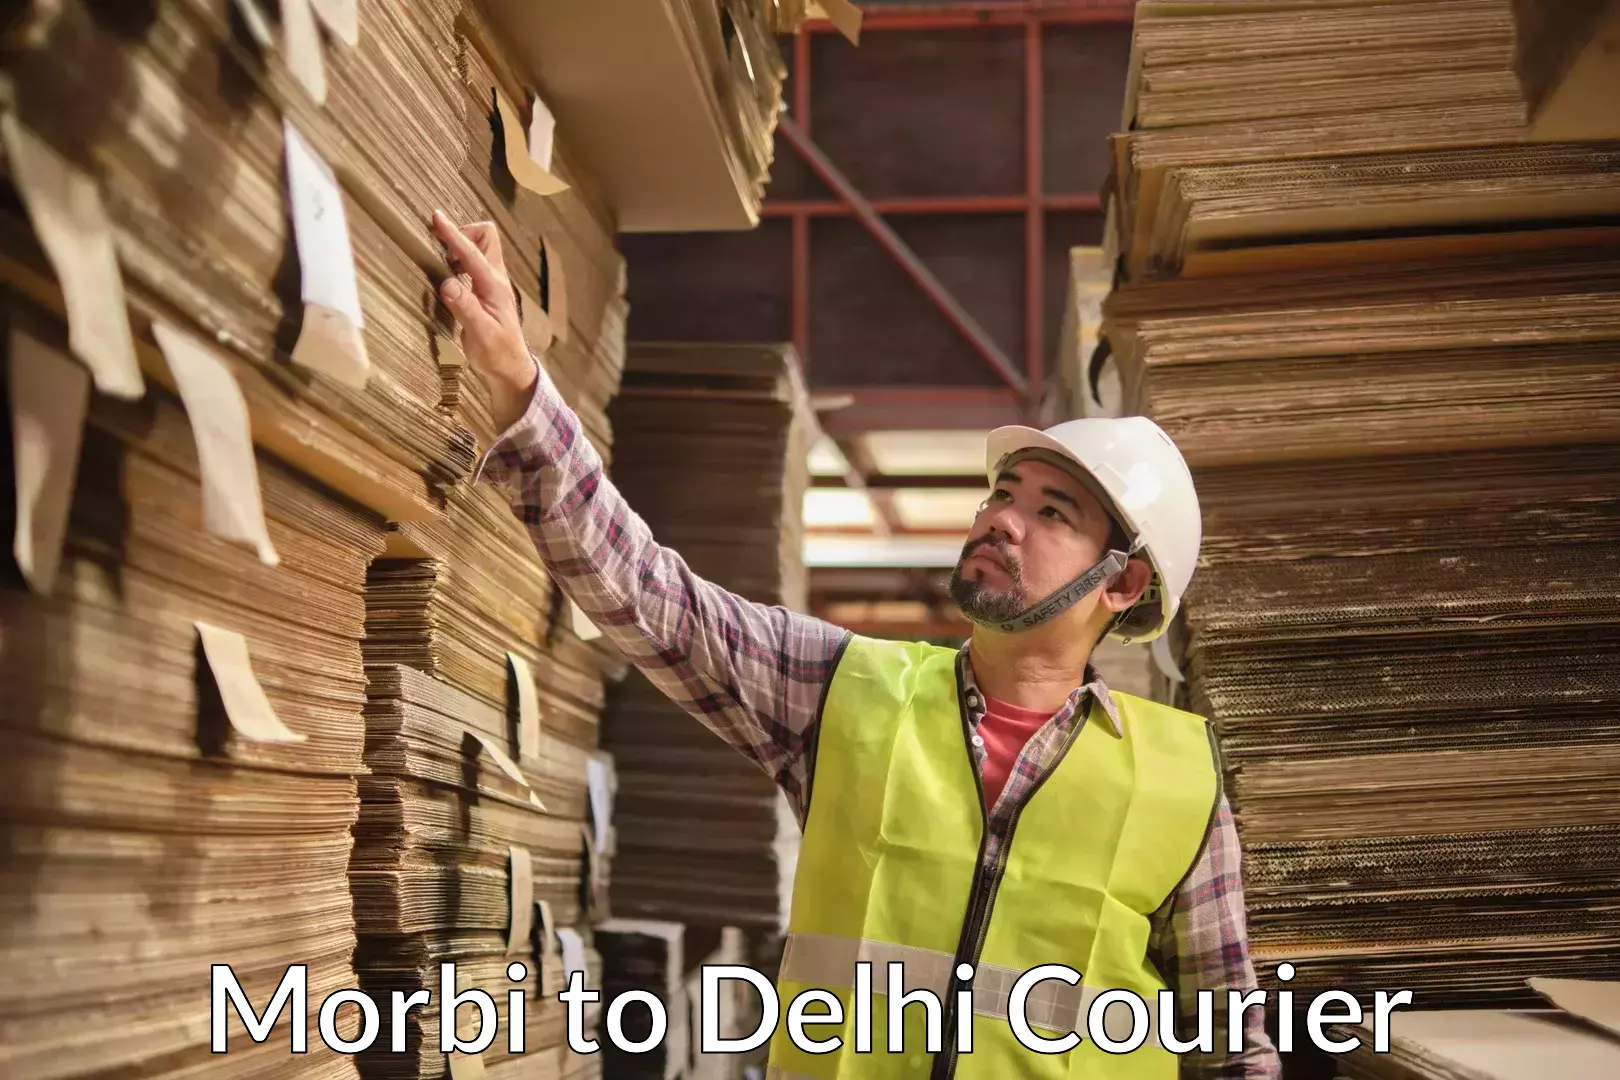 Household goods transport service Morbi to East Delhi